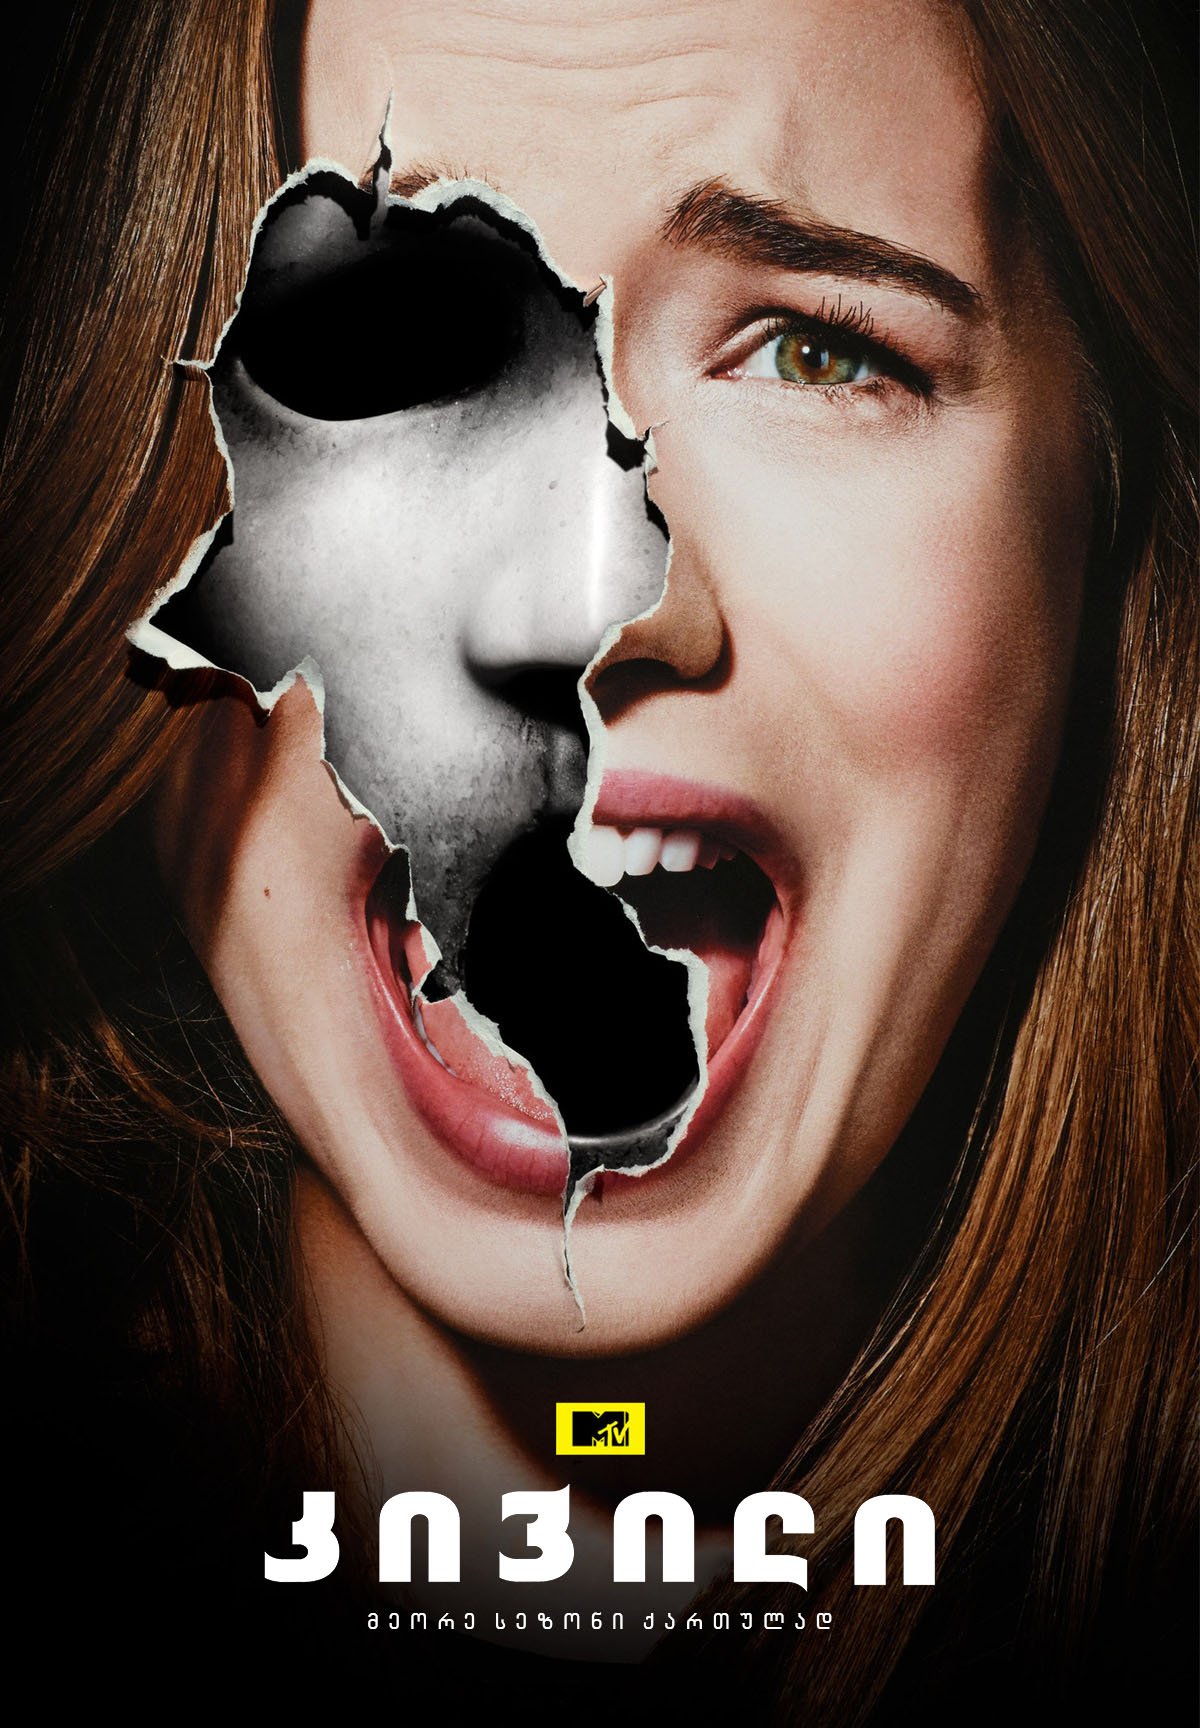 კივილი სეზონი 2 / Scream Season 2 ქართულად